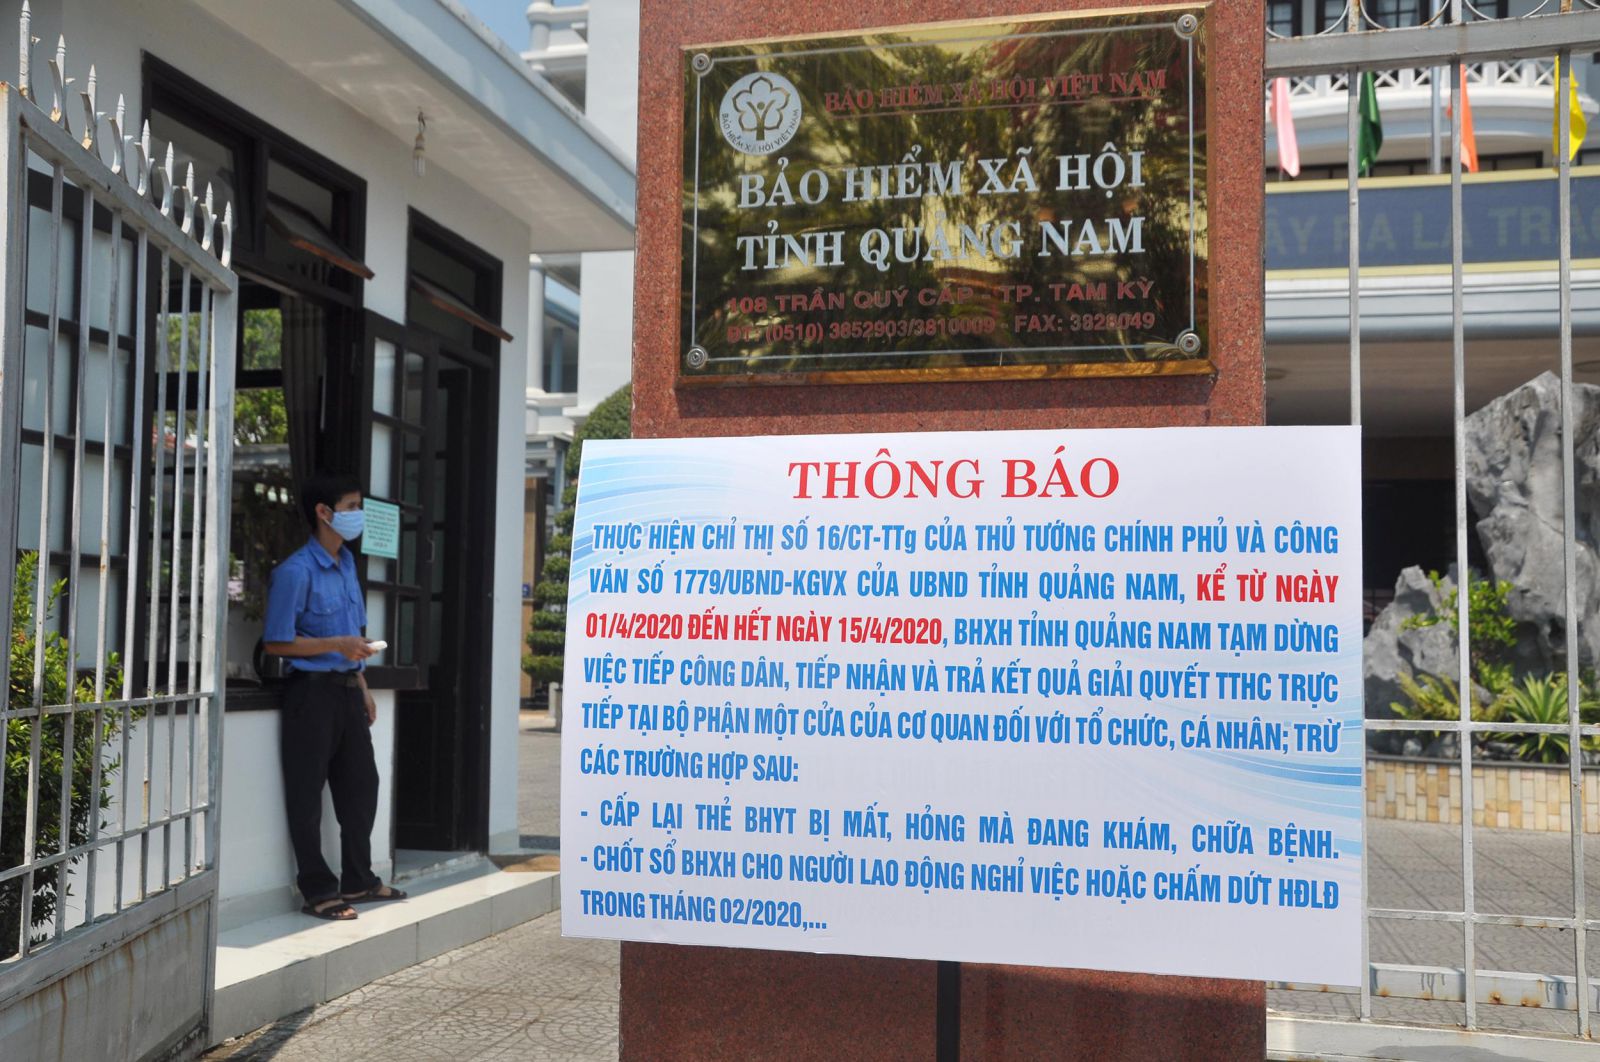 BHXH tỉnh Quảng Nam thông báo công khai về việc tiếp nhận, trả kết quả TTHC trong thời gian thực hiện cách ly xã hội phòng, chống dịch COVID-19